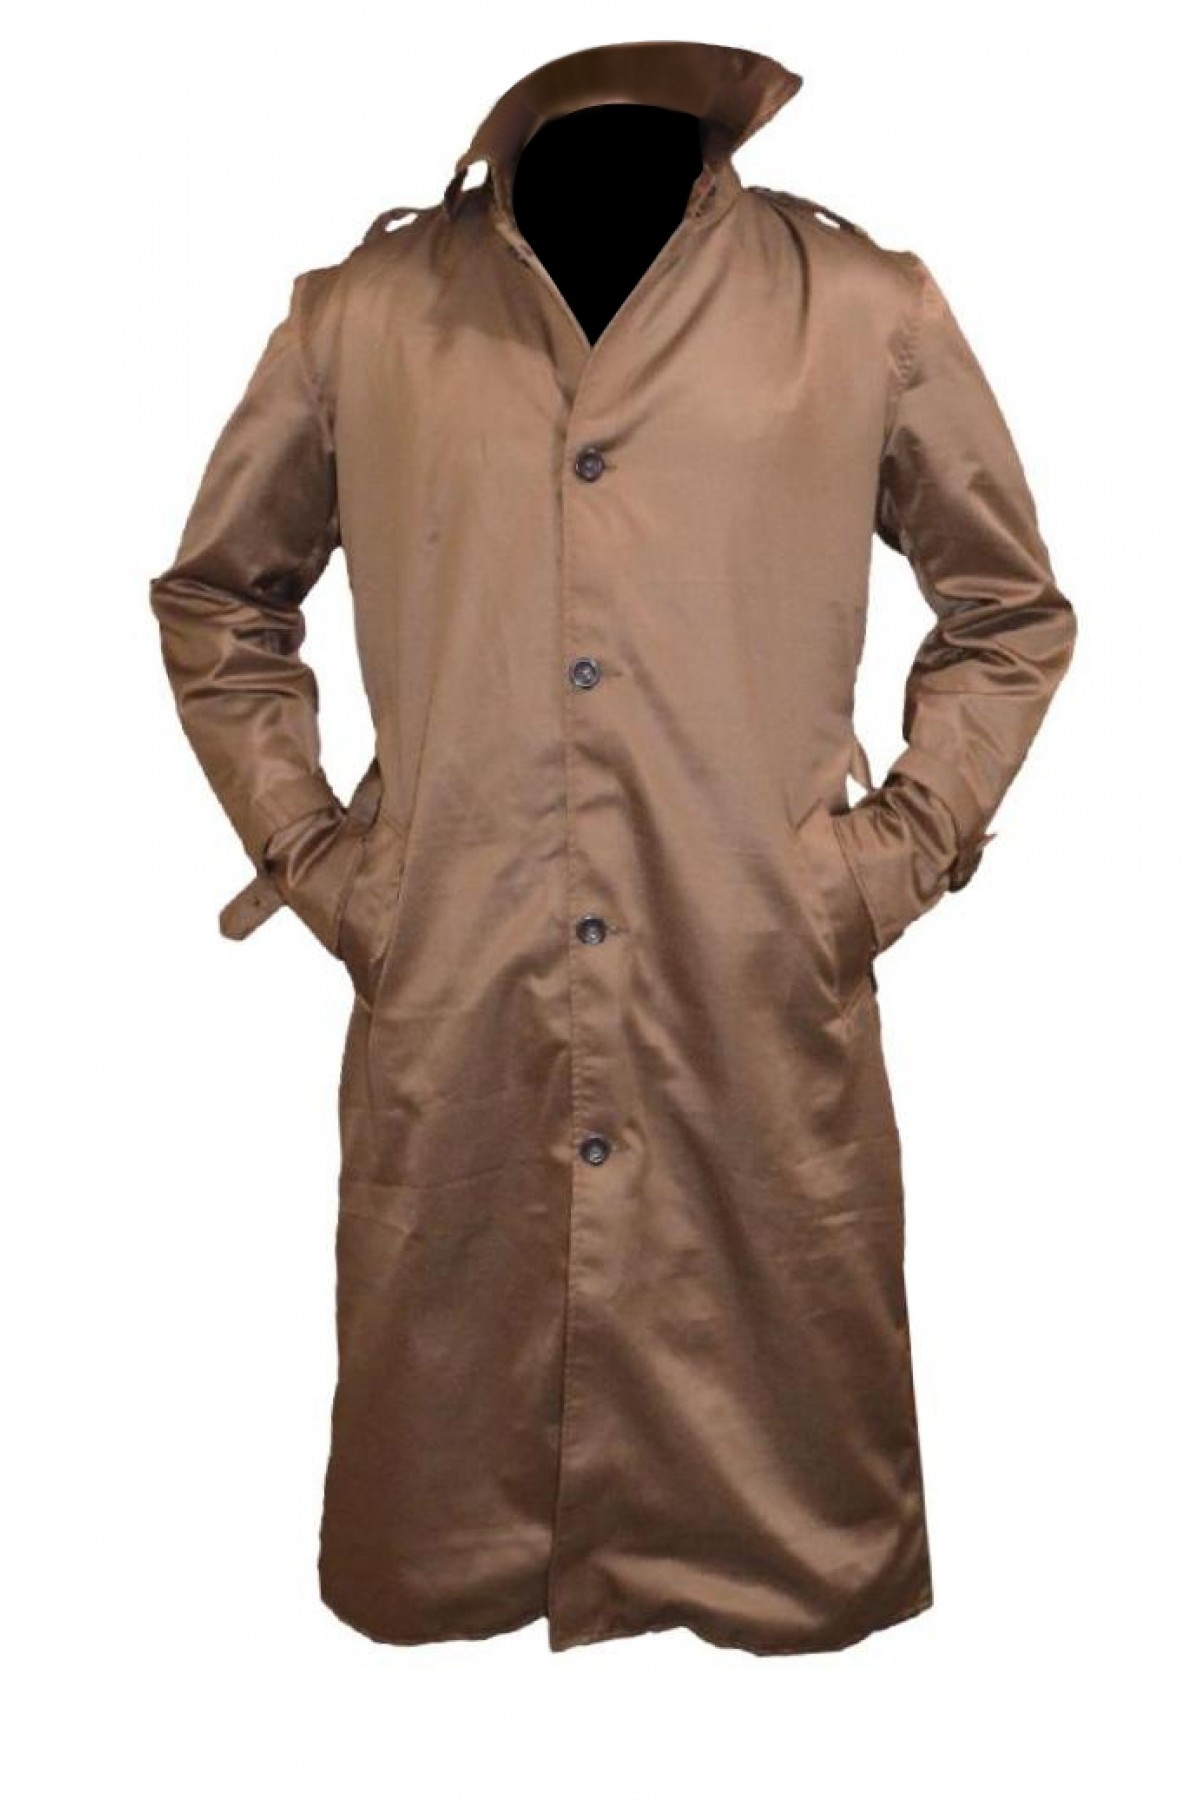 John Constantine Trench Coat | Constantine TV Series Jacket